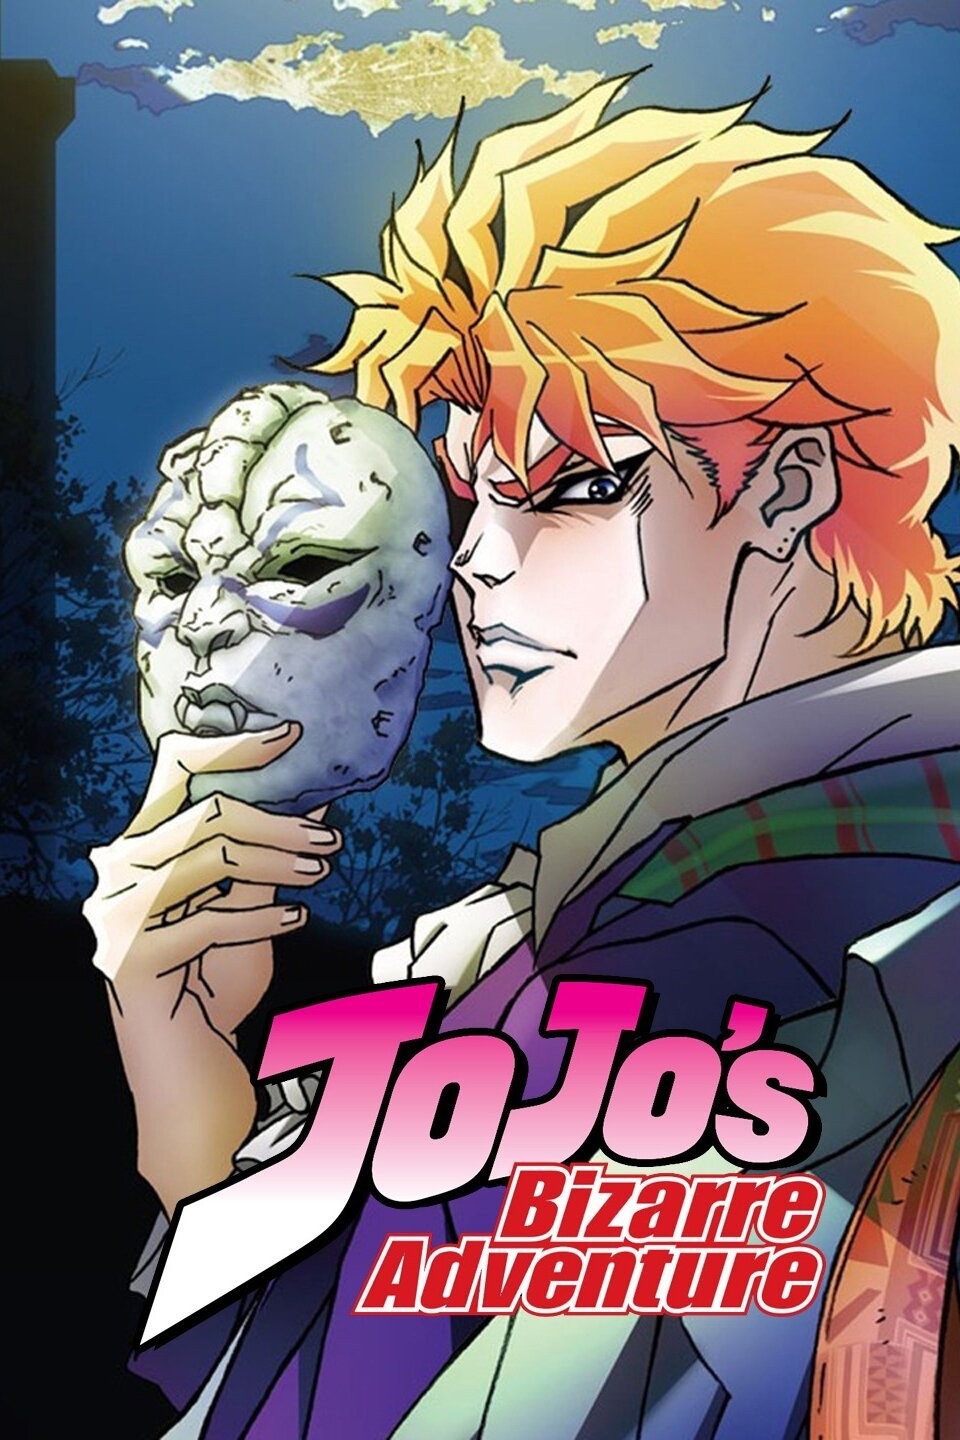 JoJo's Bizarre Adventure (Season 1) - JoJo's Bizarre Encyclopedia